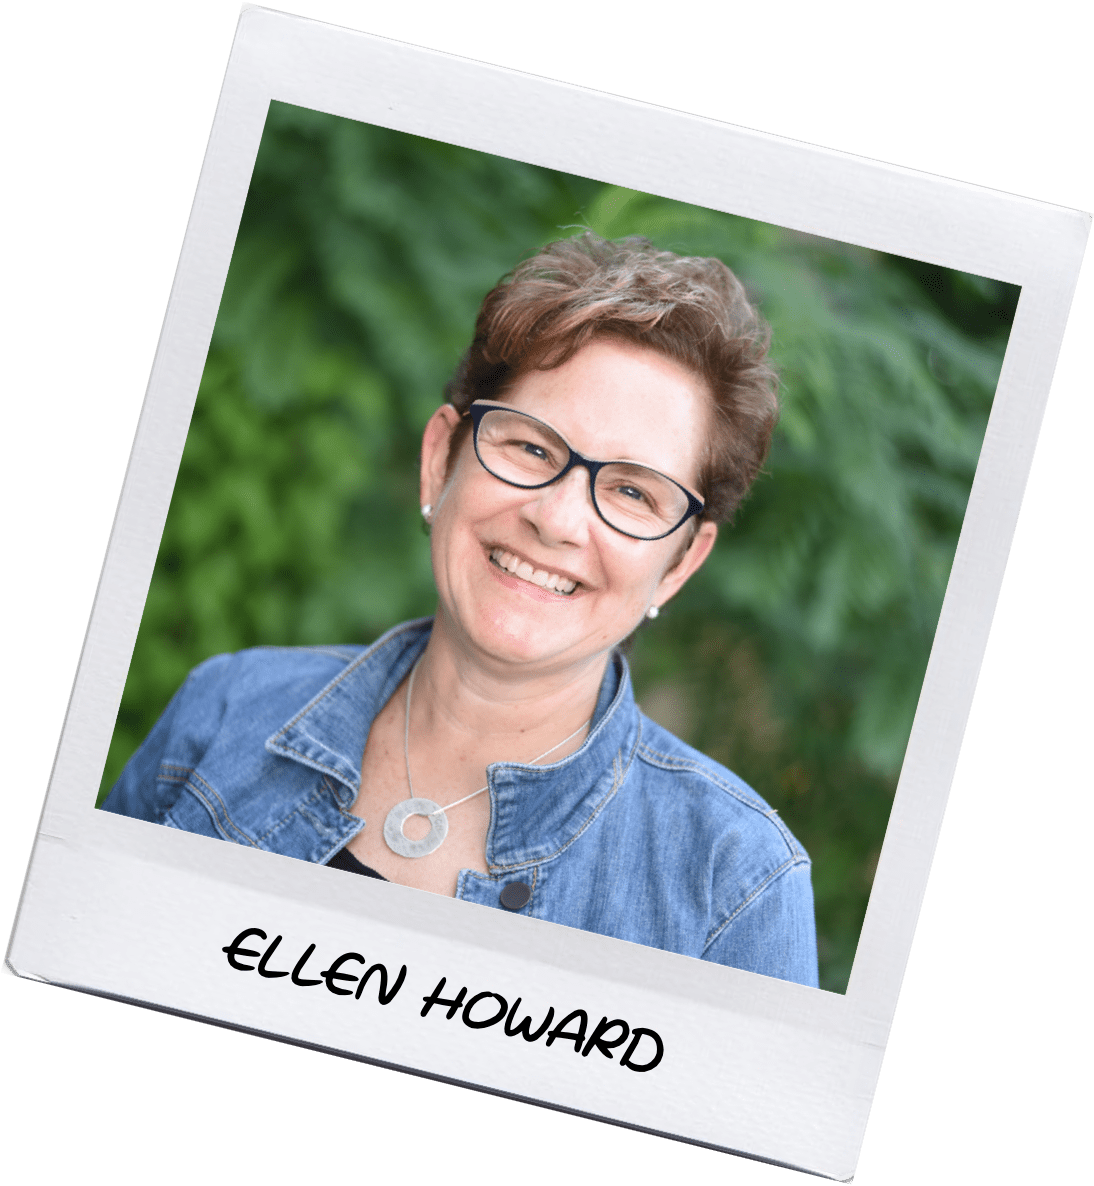 Ellen Howard